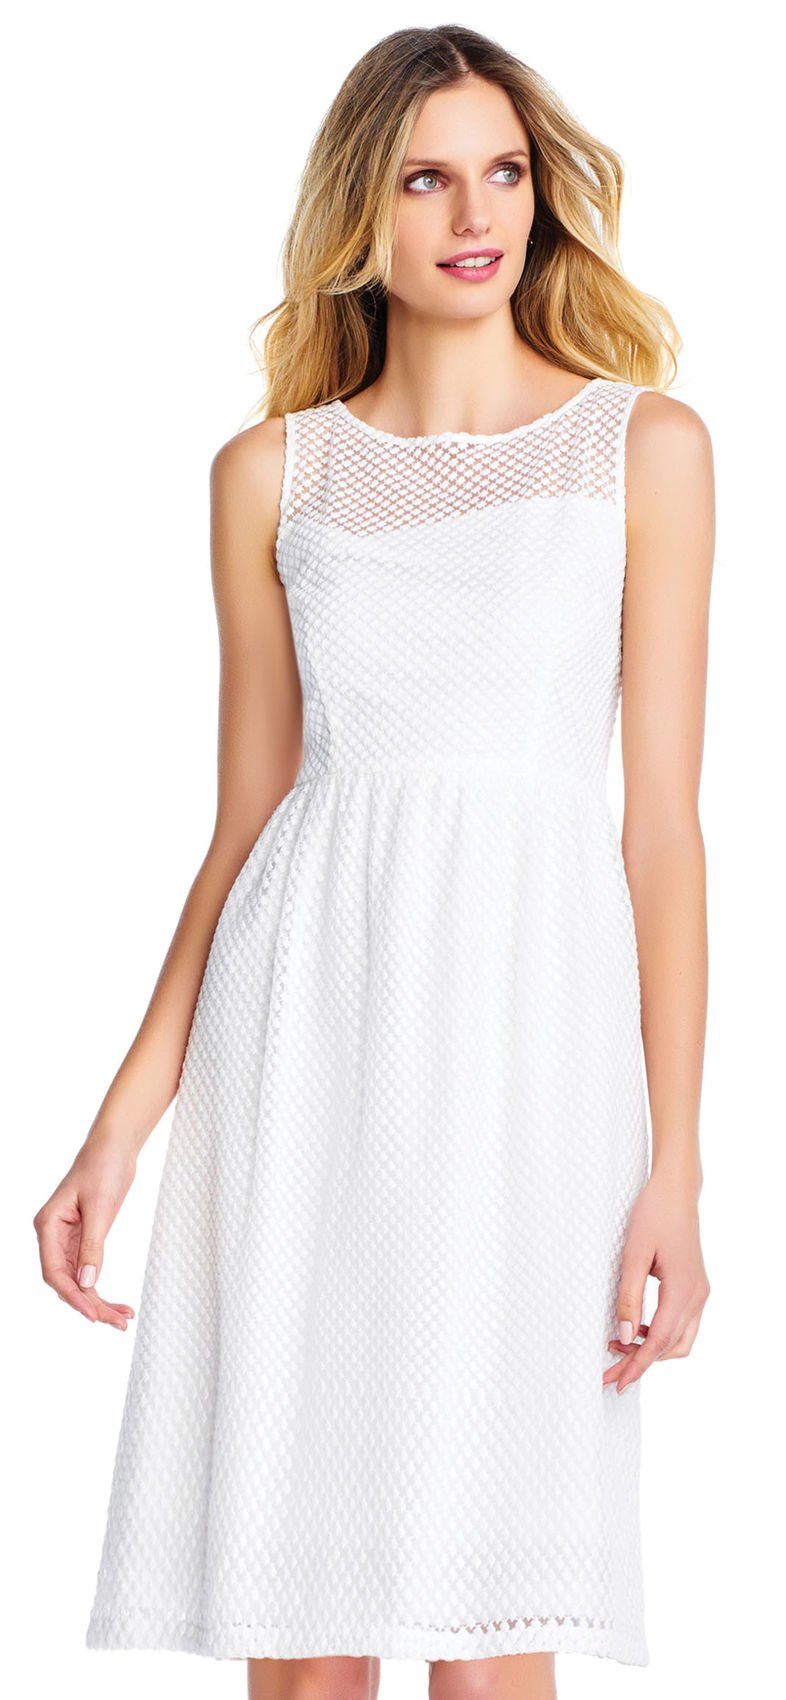 White Starry Patterned Short Dress